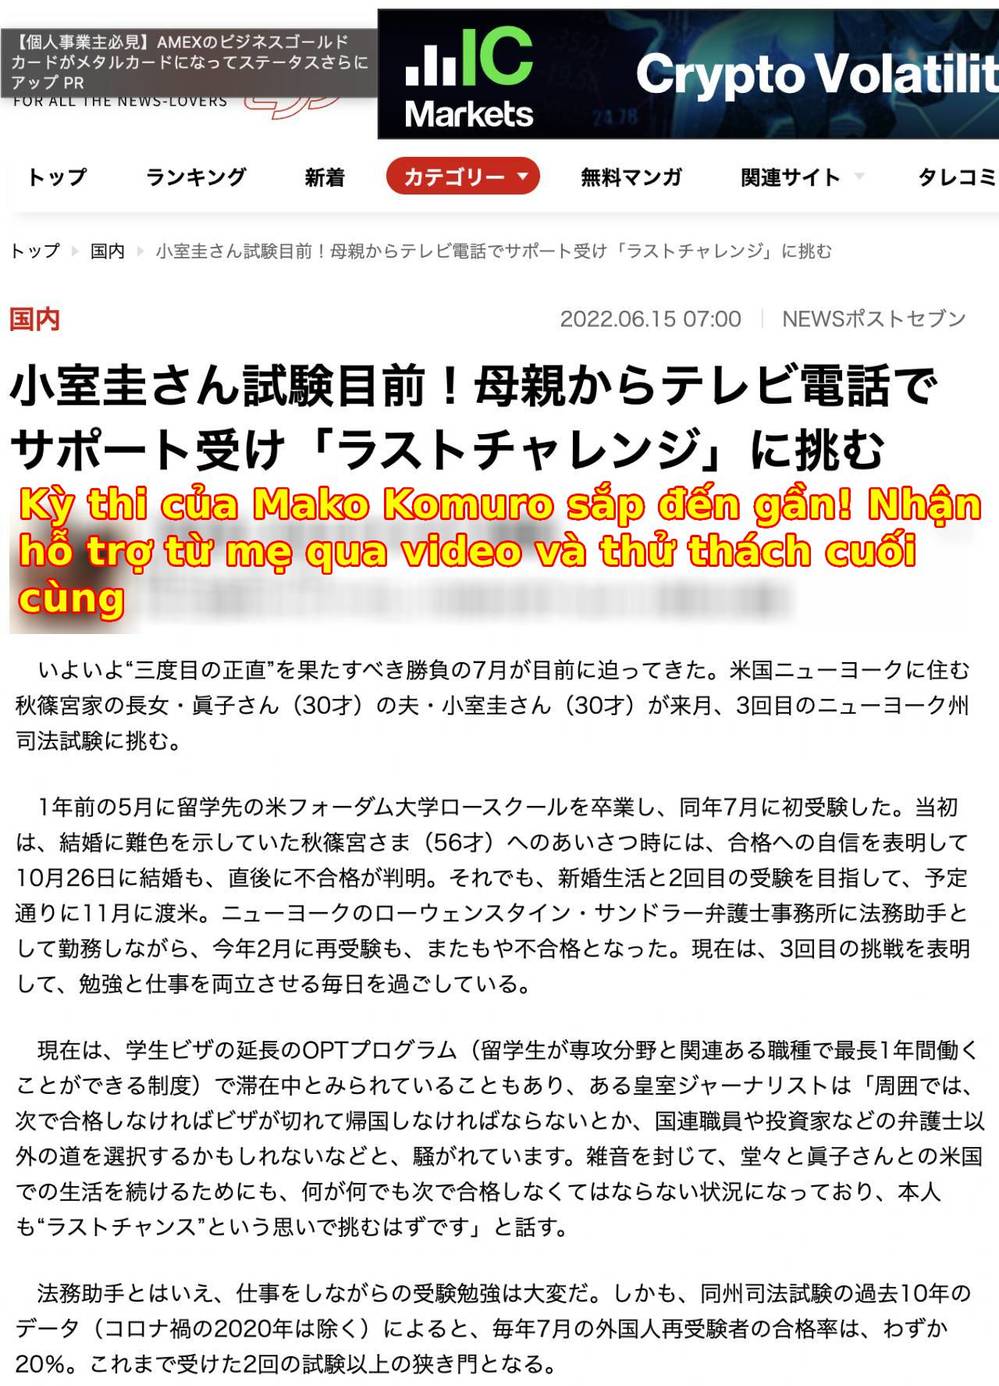  
Một tờ báo của Nhật Bản đưa tin về vợ chồng cựu Công chúa Mako. (Ảnh: News Postseven)